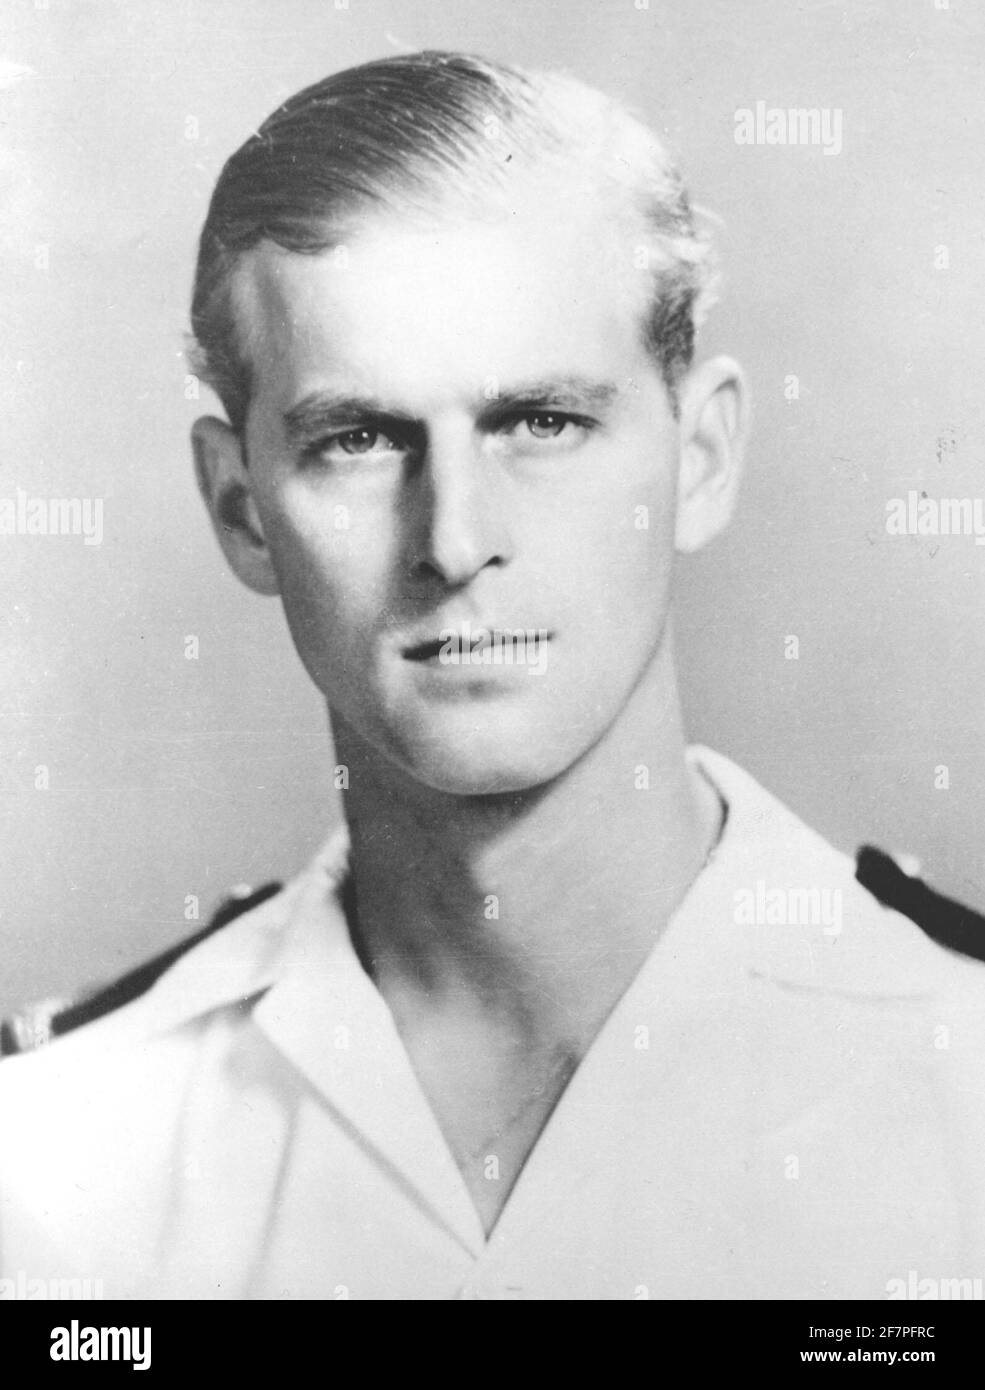 Datei-Foto vom 01/05/51 des Duke of Edinburgh als Kommandant der Frigate HMS Magpie im Jahr 1951. Philip trat der Marine bei, nachdem er die Schule verlassen hatte, und schrieb sich im Mai 1939 am Royal Naval College in Dartmouth ein, wo er als bester Kadett ausgezeichnet wurde. Er stieg schnell durch die Reihen und verdiente Aufstieg nach Aufstieg, aber sein Leben sollte einen ganz anderen Kurs nehmen. Die florierende Marinekarriere von dukeÕs kam 1951 zu einem vorzeitigen Ende. Philip trat von seiner aktiven Rolle in den Kräften zurück, um seine Pflicht als Gemahl zu erfüllen. Ausgabedatum: Freitag, 4. April 2021. Stockfoto